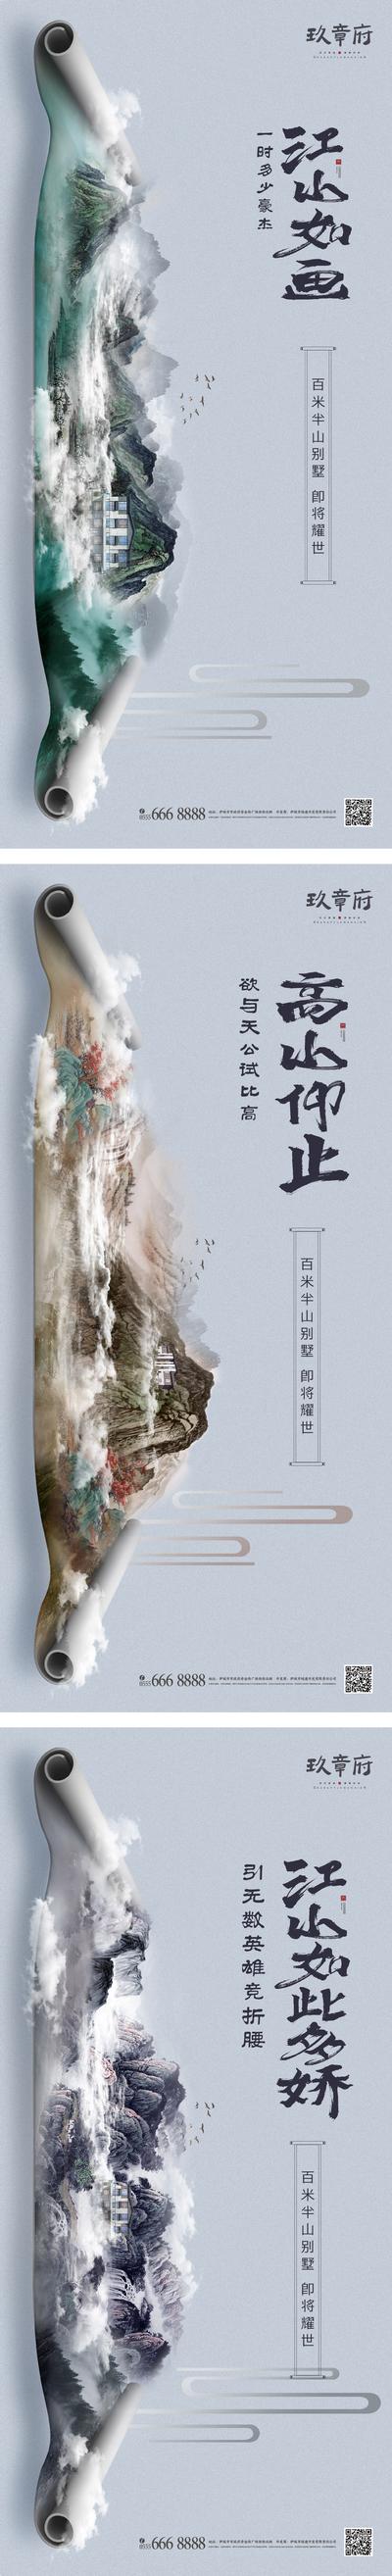 南门网 中国风水墨卷轴森林生态别墅系列海报